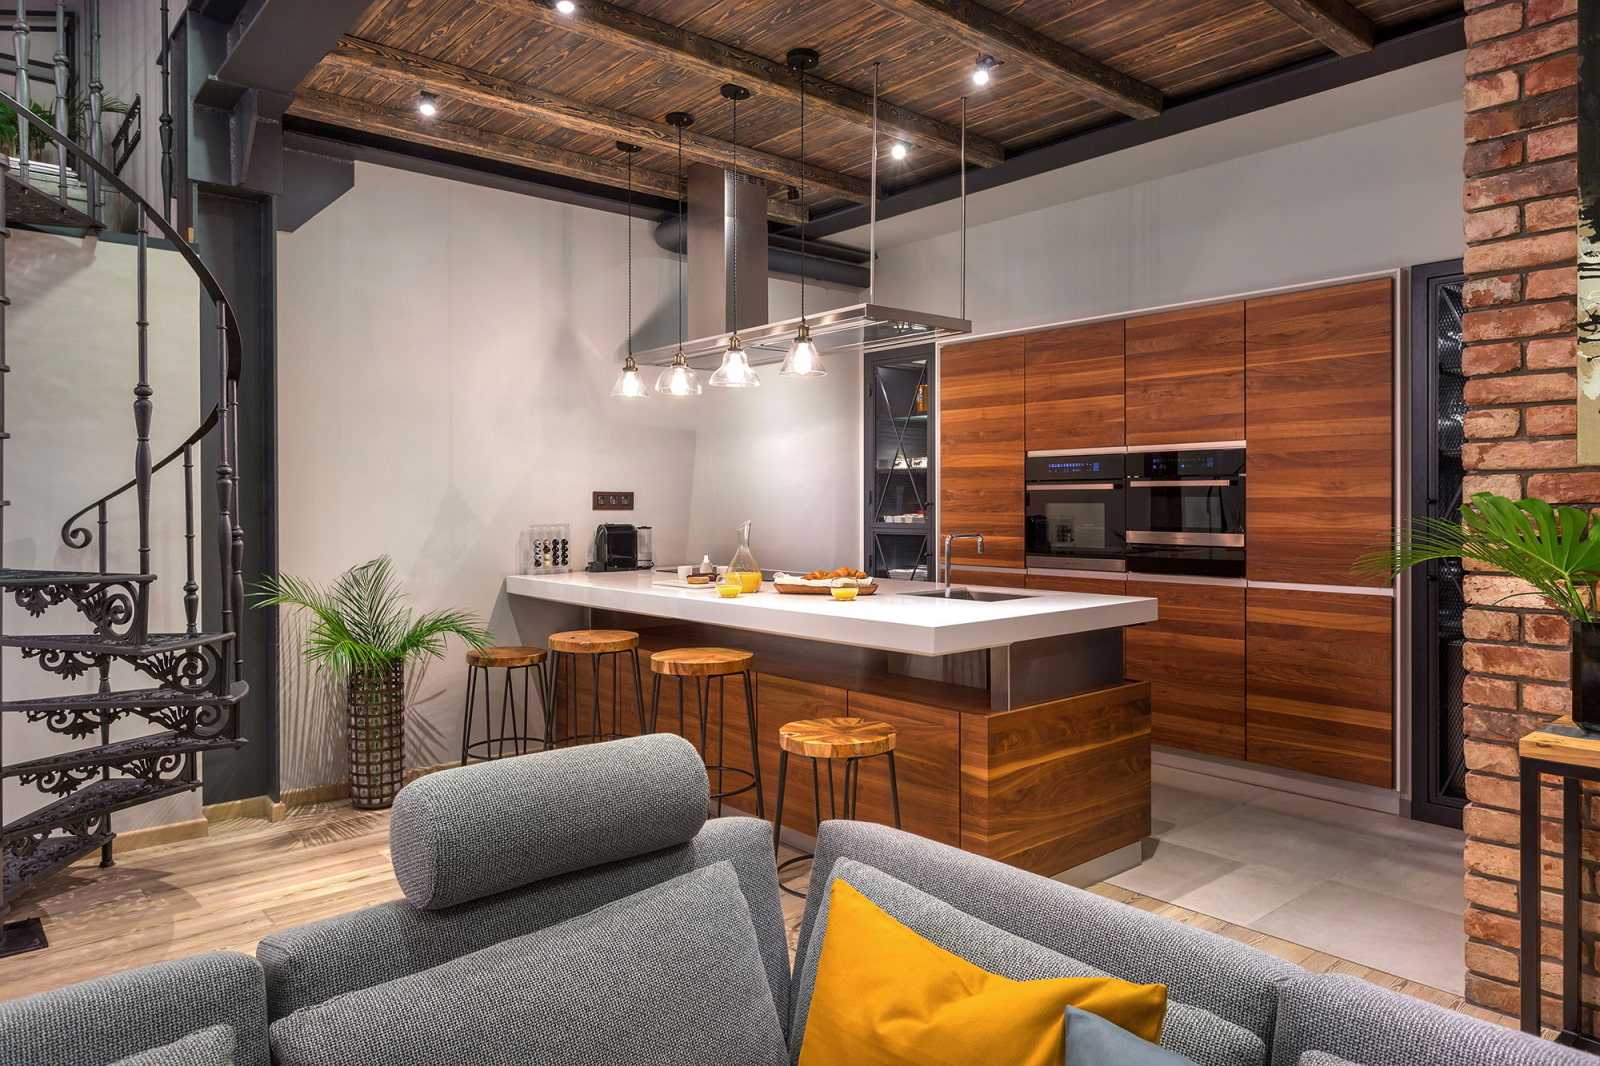 22 фото кухни-гостиной в стиле лофт: идеи дизайна, цветовые решения и выбор мебели